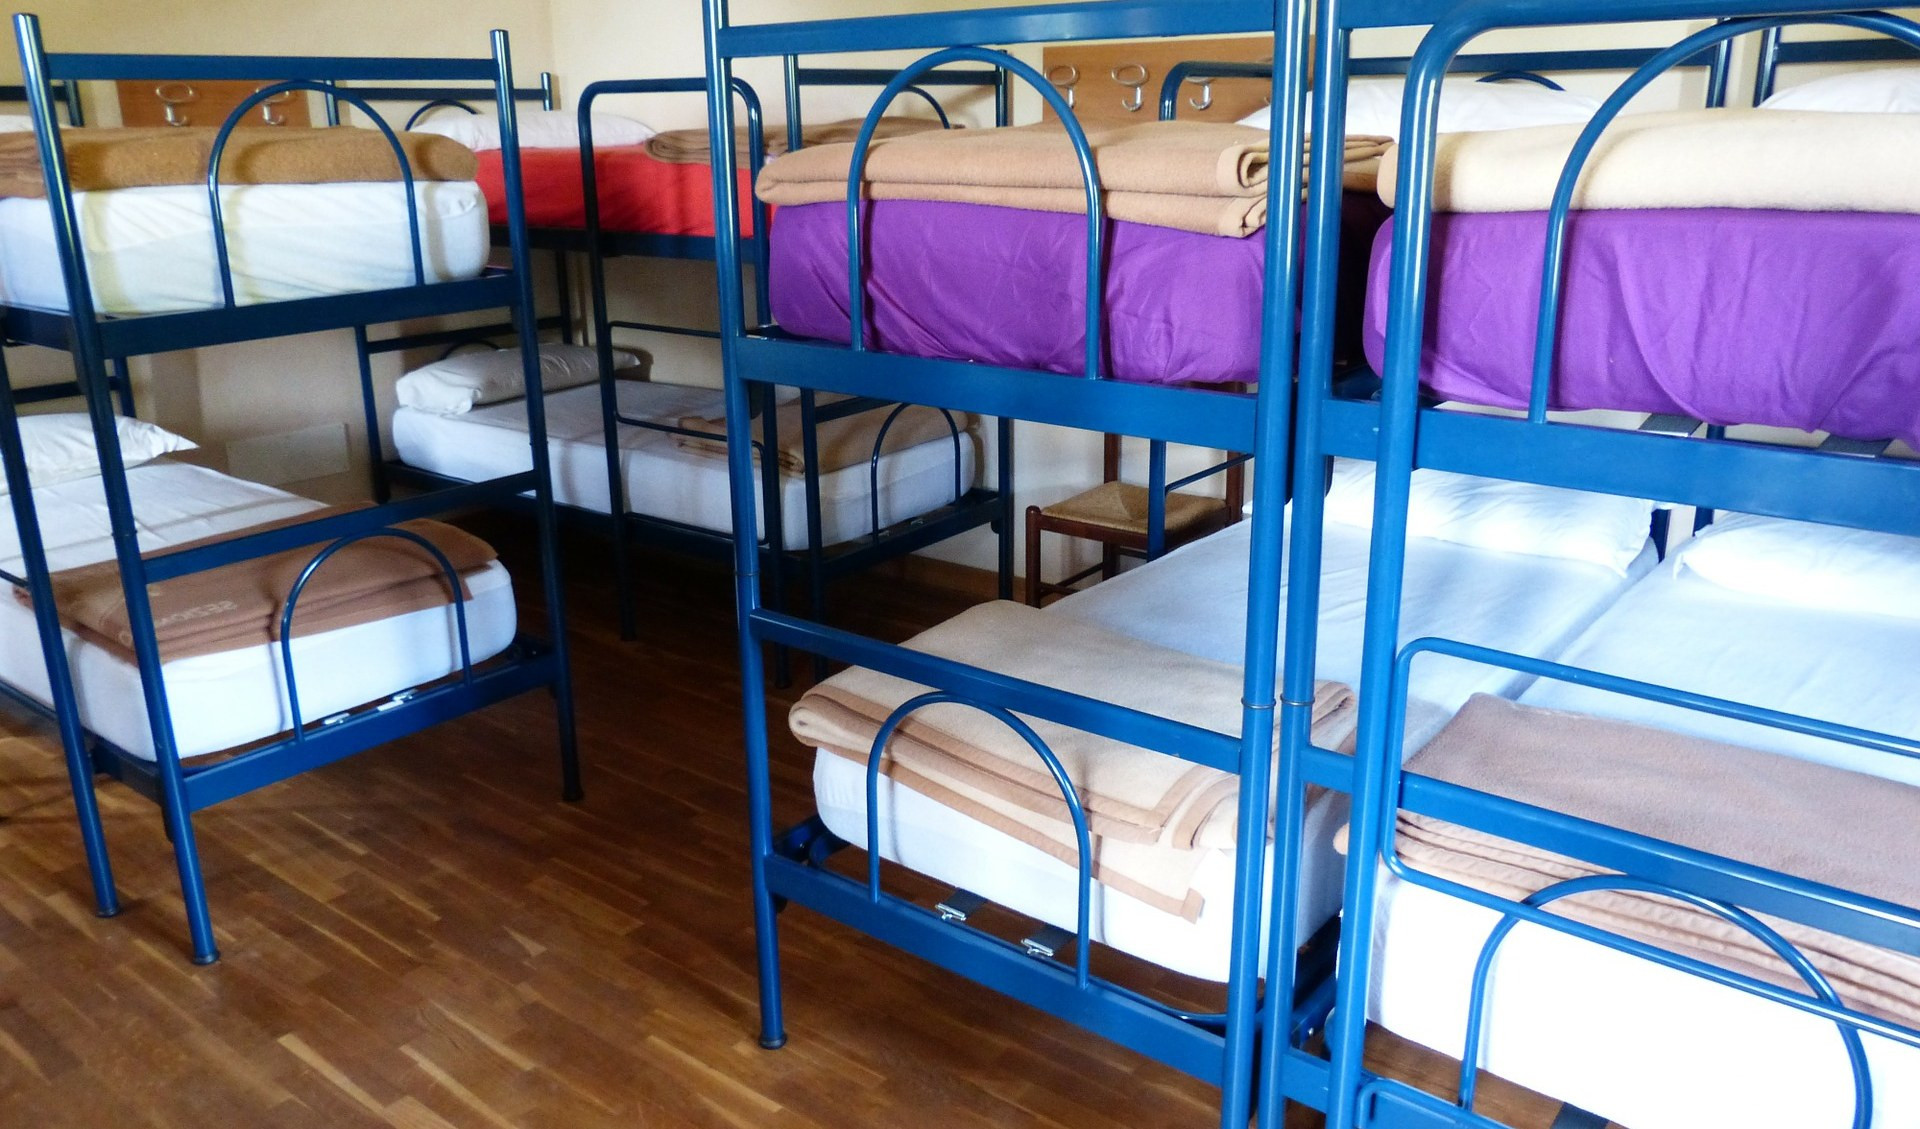 La prefettura di Genova cerca 250 posti letto nei centri di accoglienza: 